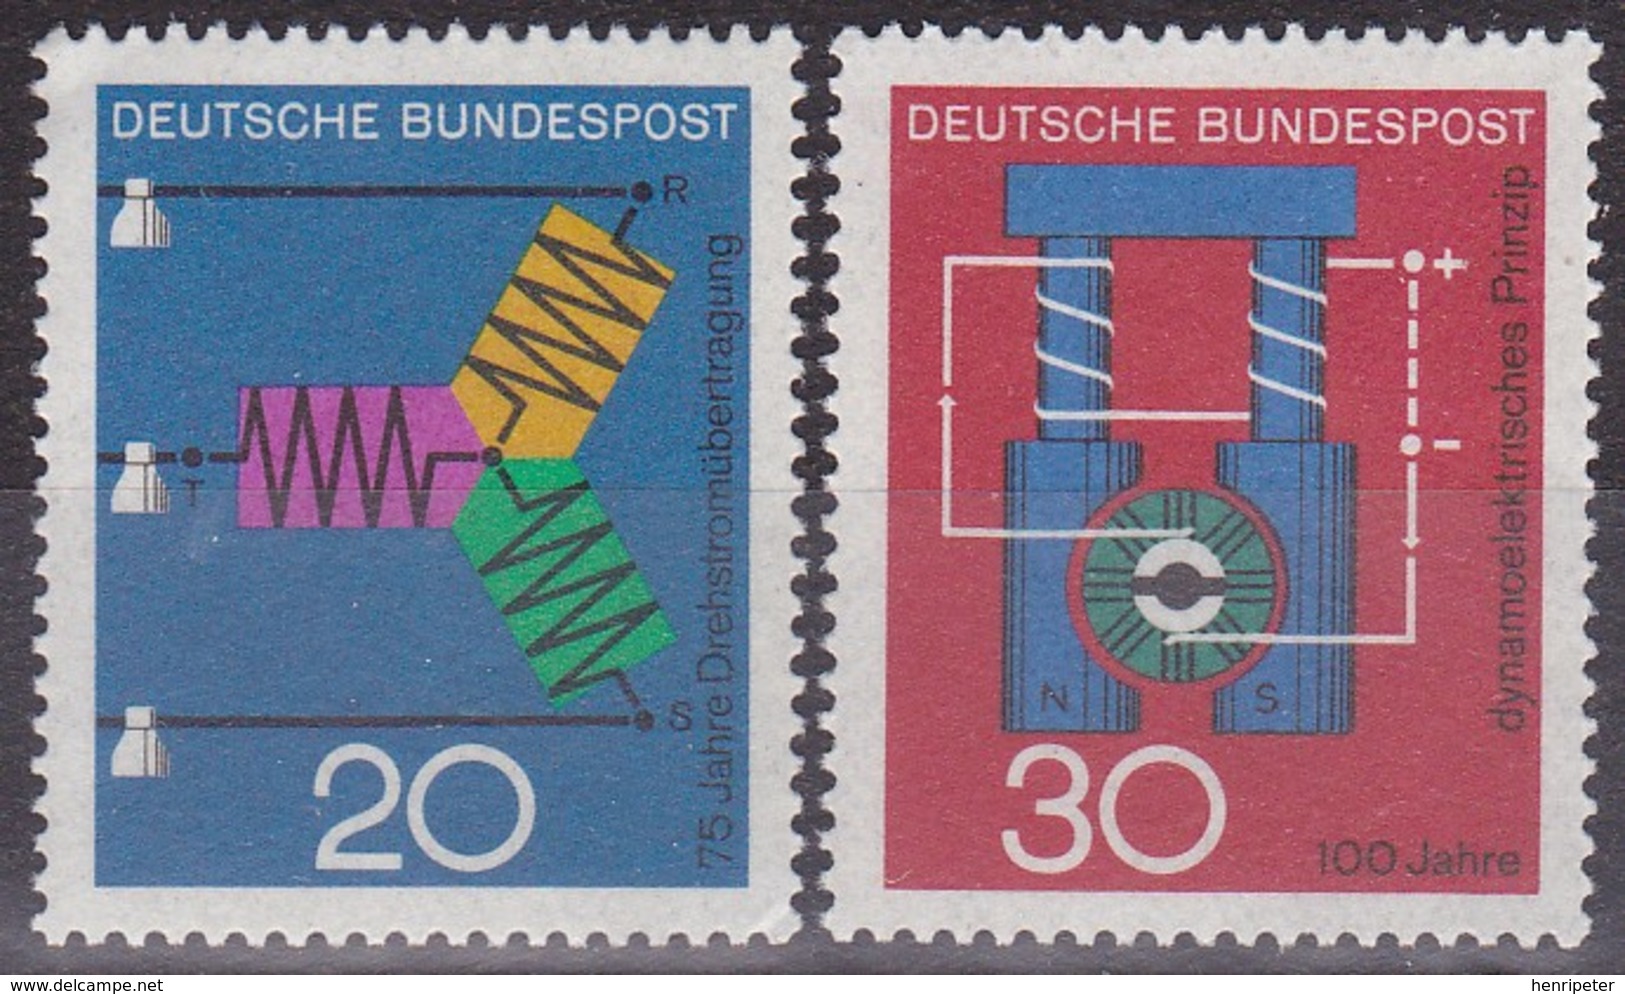 Série De 2 Timbres-poste Neufs** - Transmission Triphasée Dynamo électrique - N° 378-379 (Yvert) - RFA 1966 - Unused Stamps